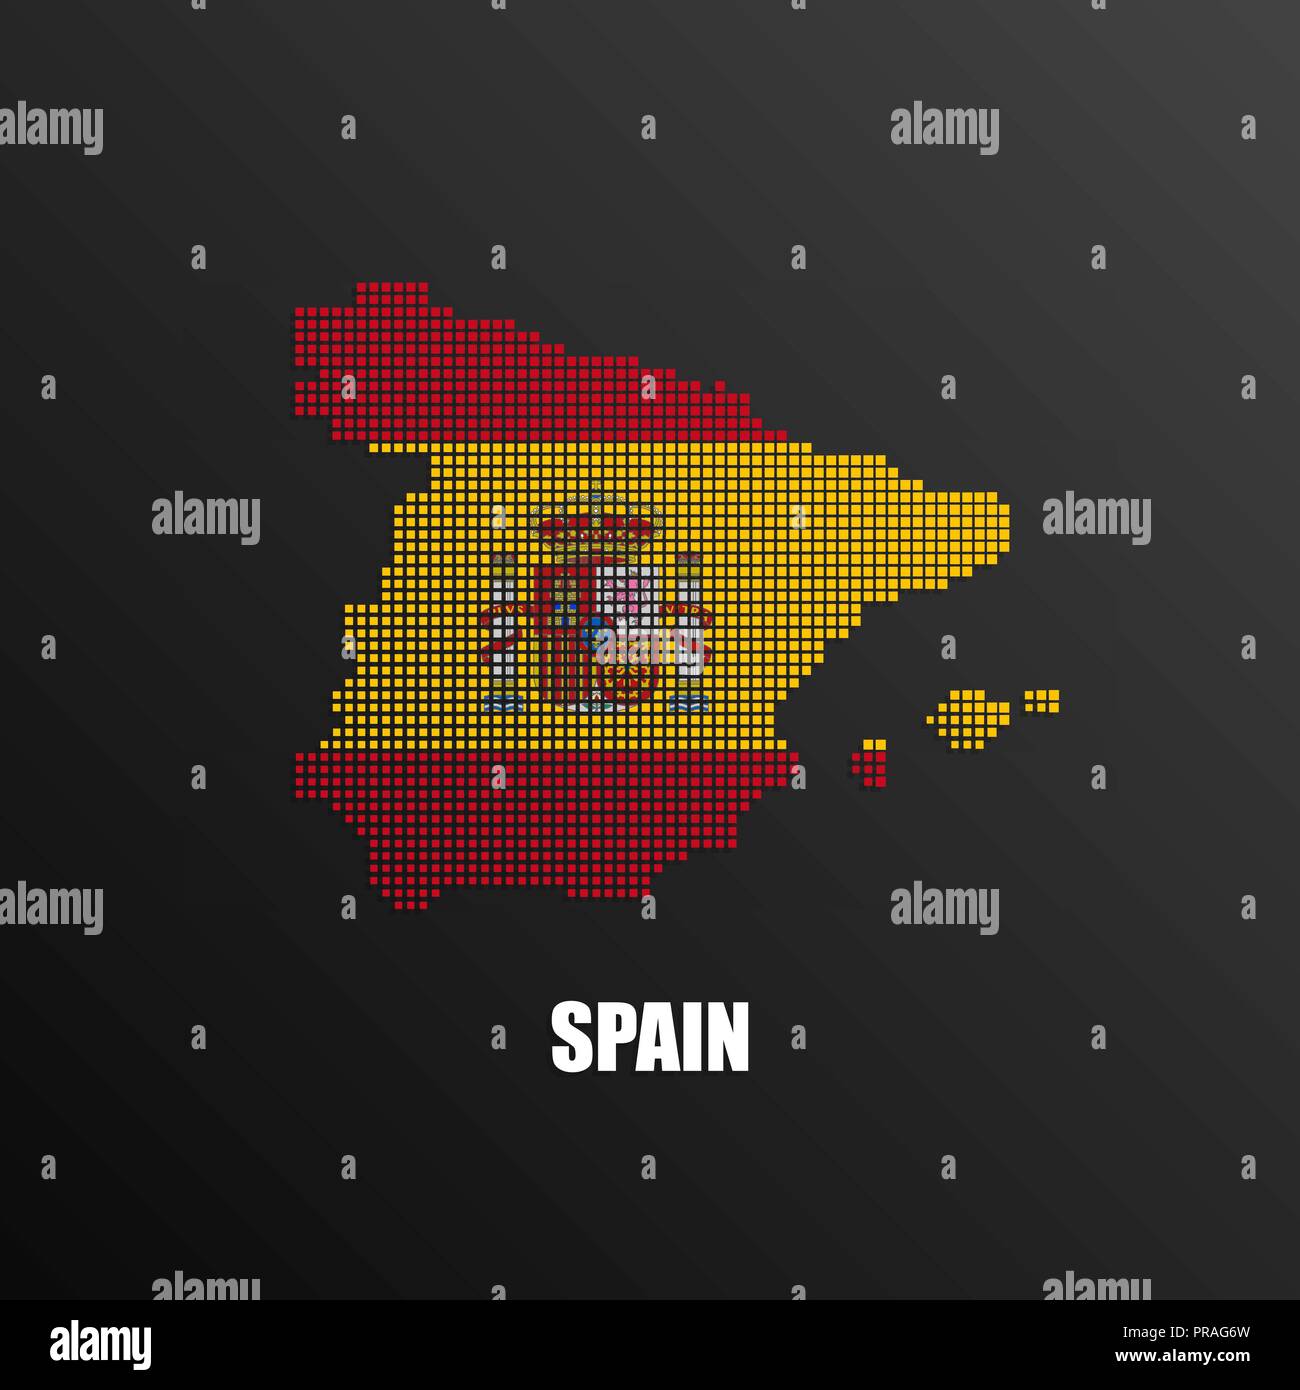 Spanische Flagge, es lebe Spanien' Sticker